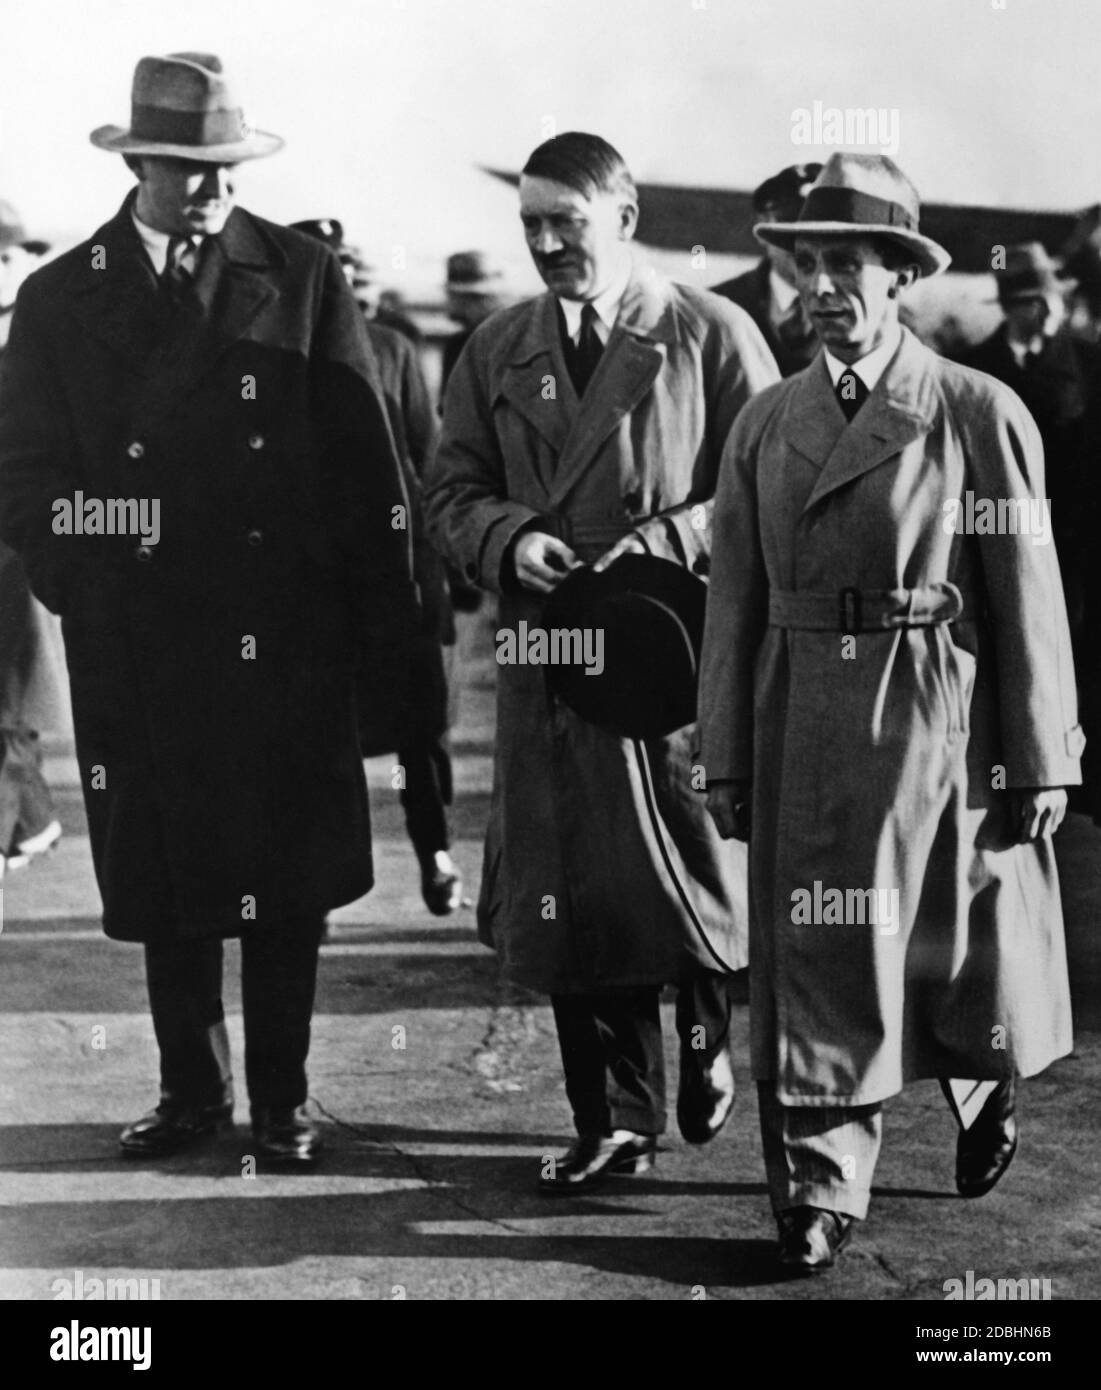 Adolf Hitler wird von Paul von Hindenburg im Tempelhofer Feld in Berlin begrüßt. Dr. Joseph Goebbels läuft neben Hitler. In dieser Zeit hatte Hitler immer eine Hundepeitsche als Zubehör bei sich. Er und Goebbels trugen den Trenchcoat, den Hitler als Kleidungsstück einführte und mit Hilfe dessen versuchte, sich von der Kleiderart der Weimarer Politiker zu distanzieren. Stockfoto